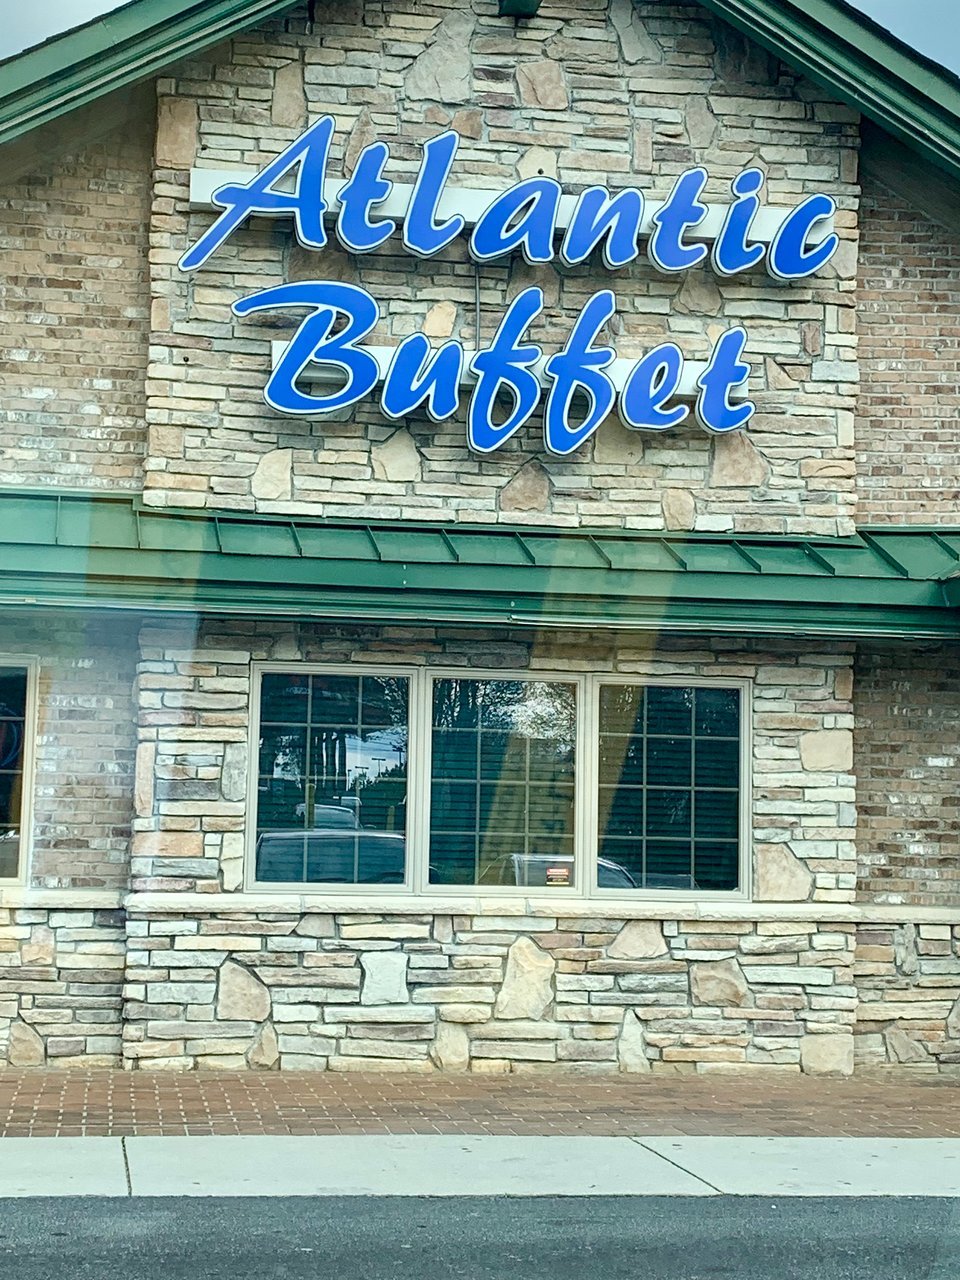 Atlantic Buffet